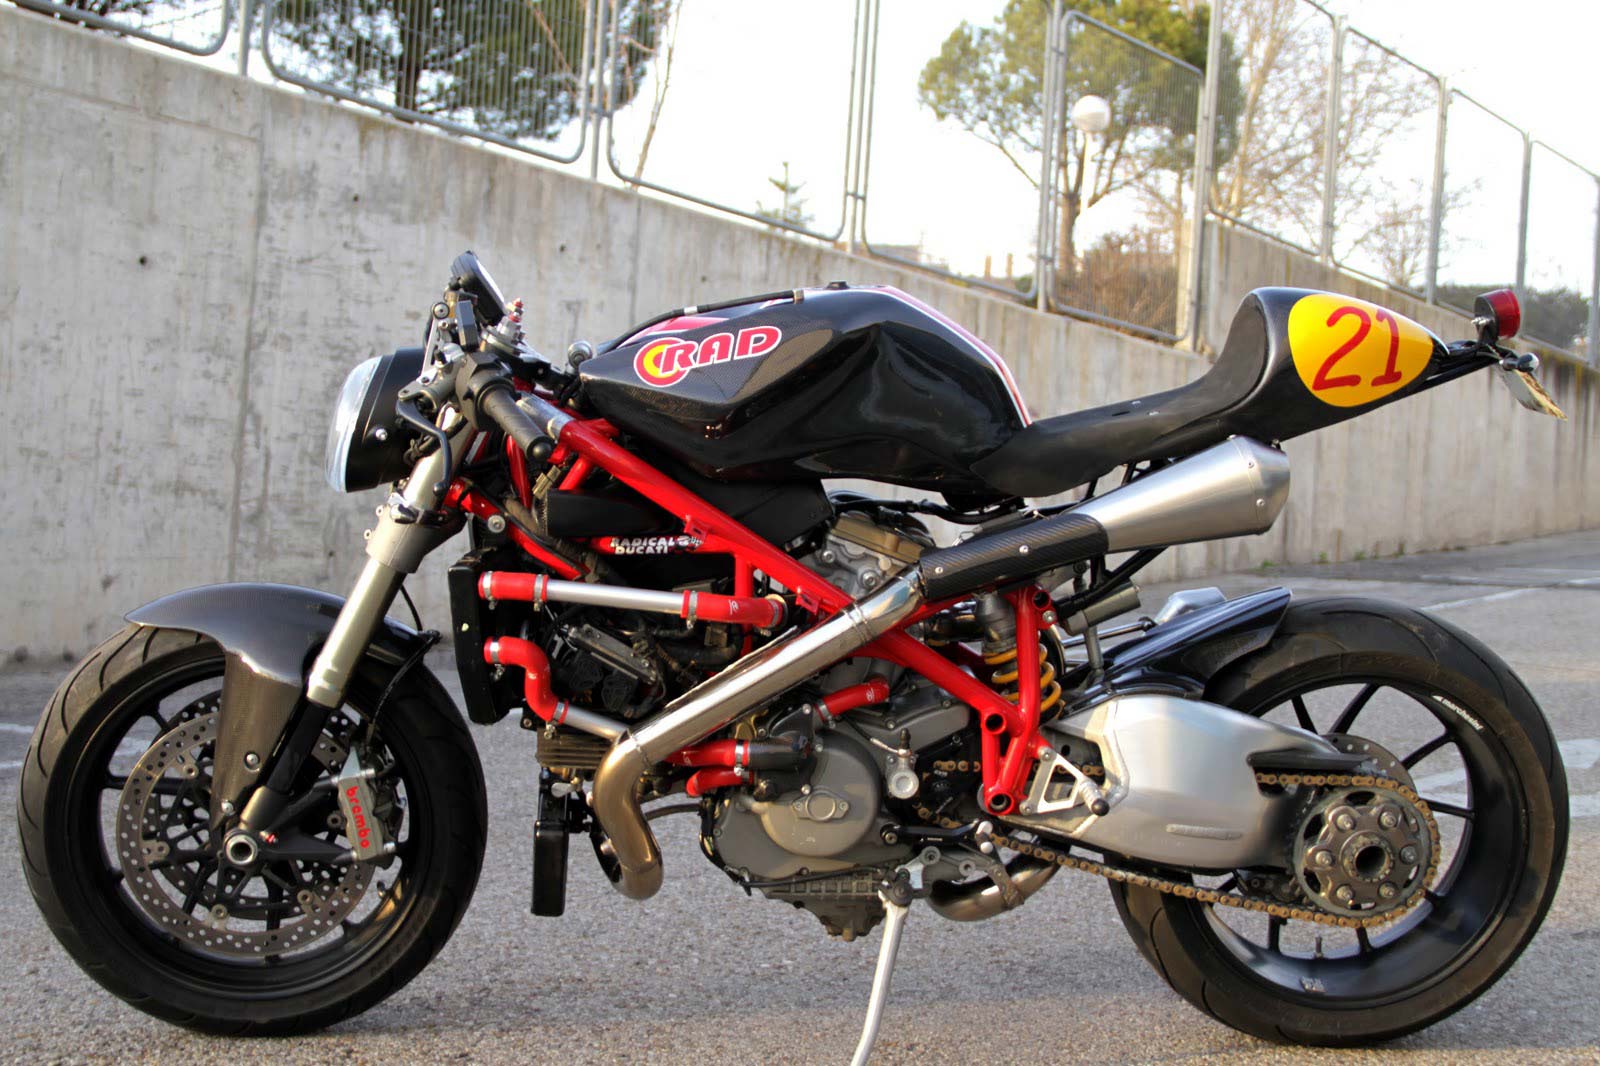 Parade Modifikasi Cafe Racer Ducati Desain Modifikasi Motor Terbaik Wwwotodesainnet